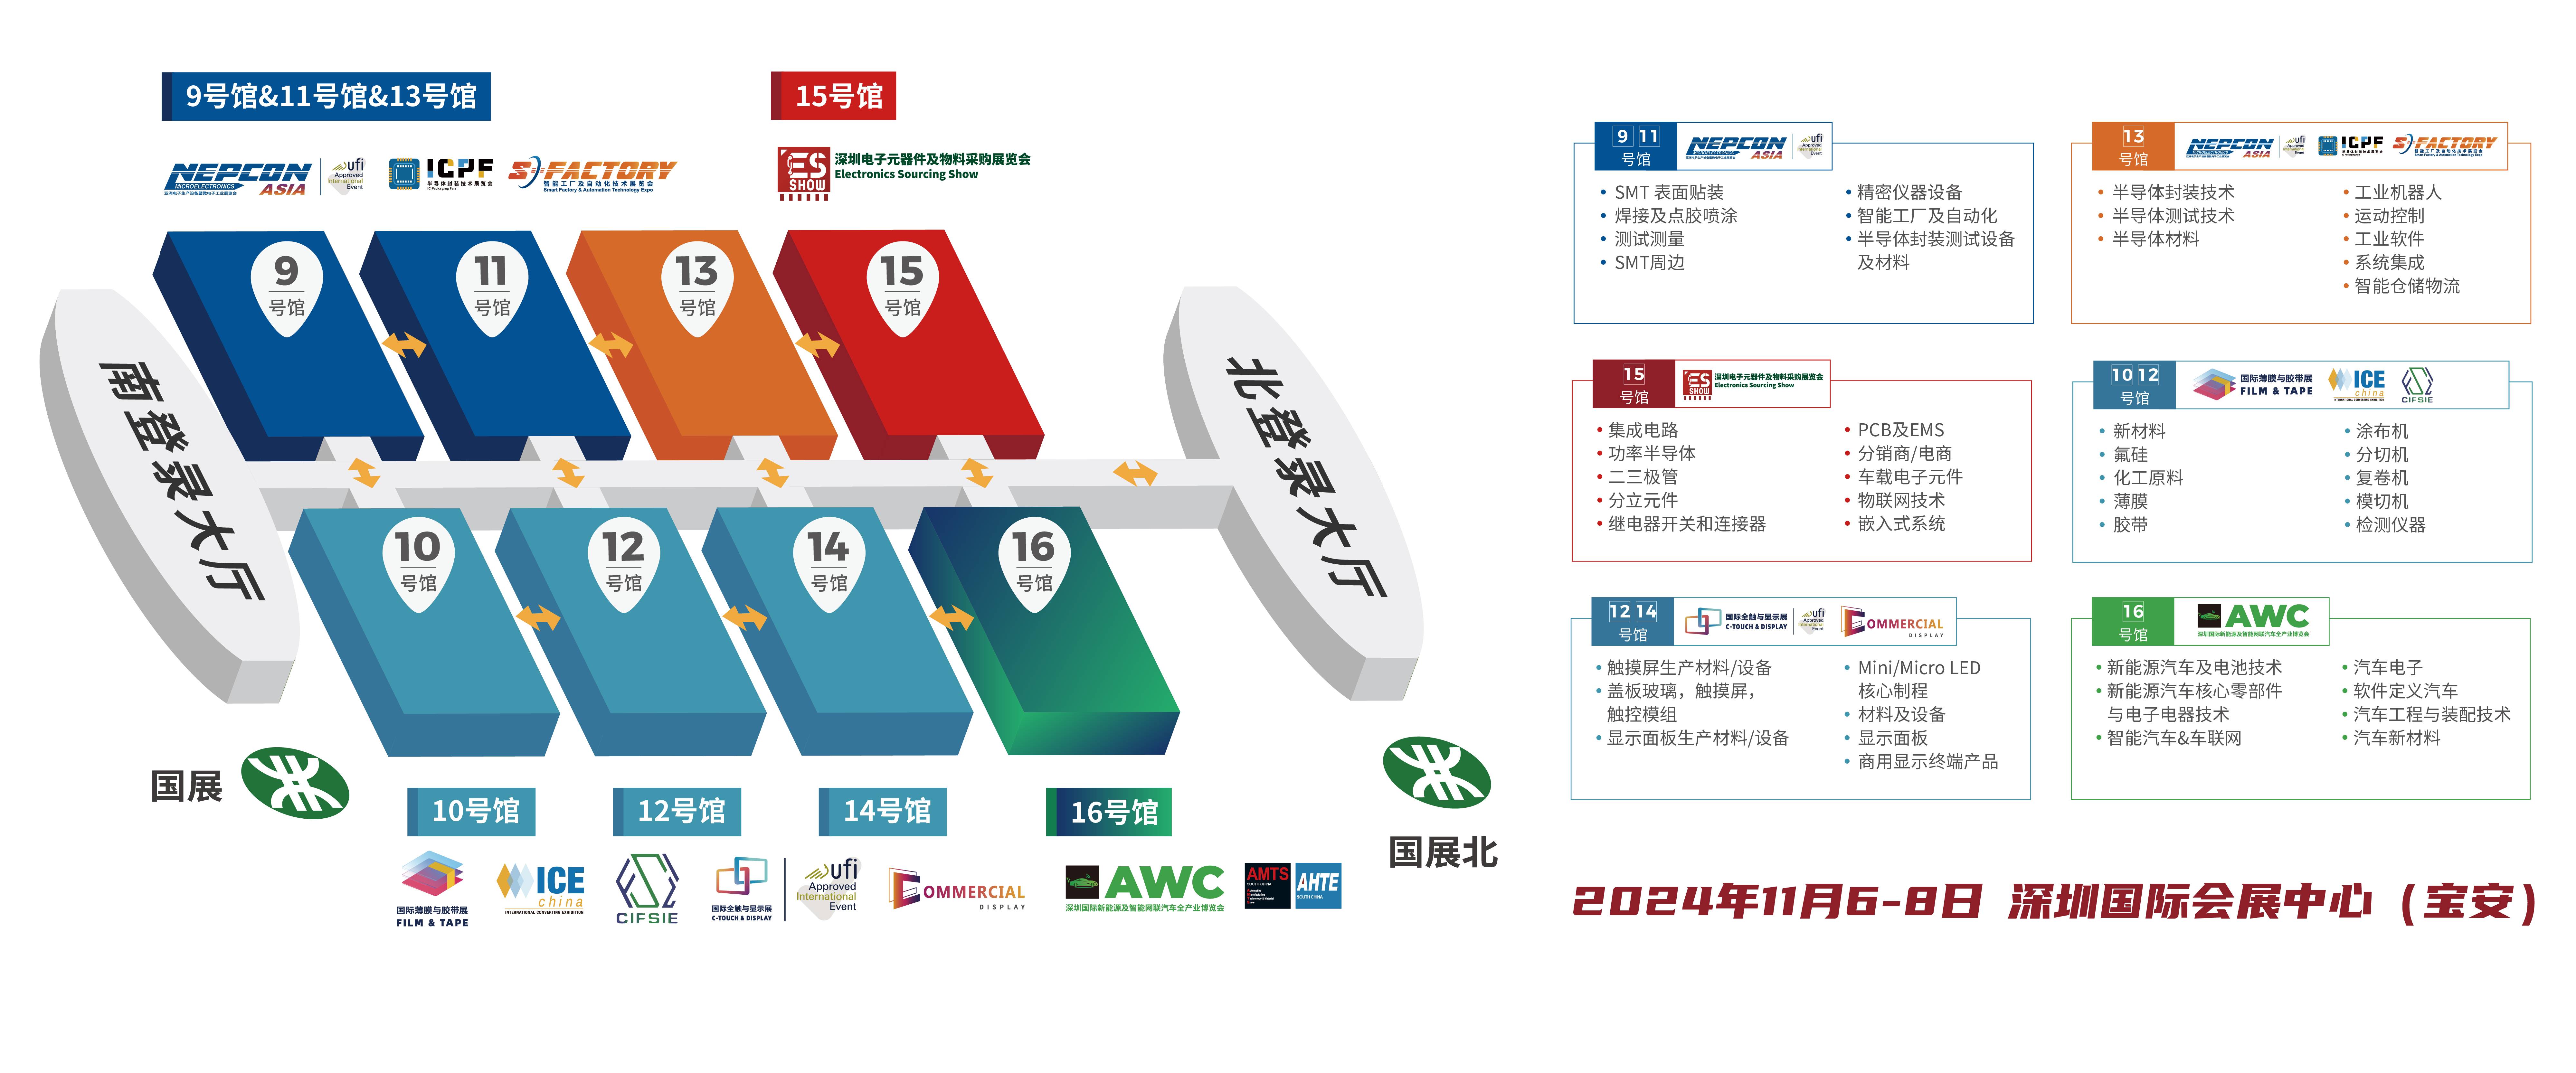 电路板 深圳电子展 PCB 保护器件 华南电子展 中国电子展